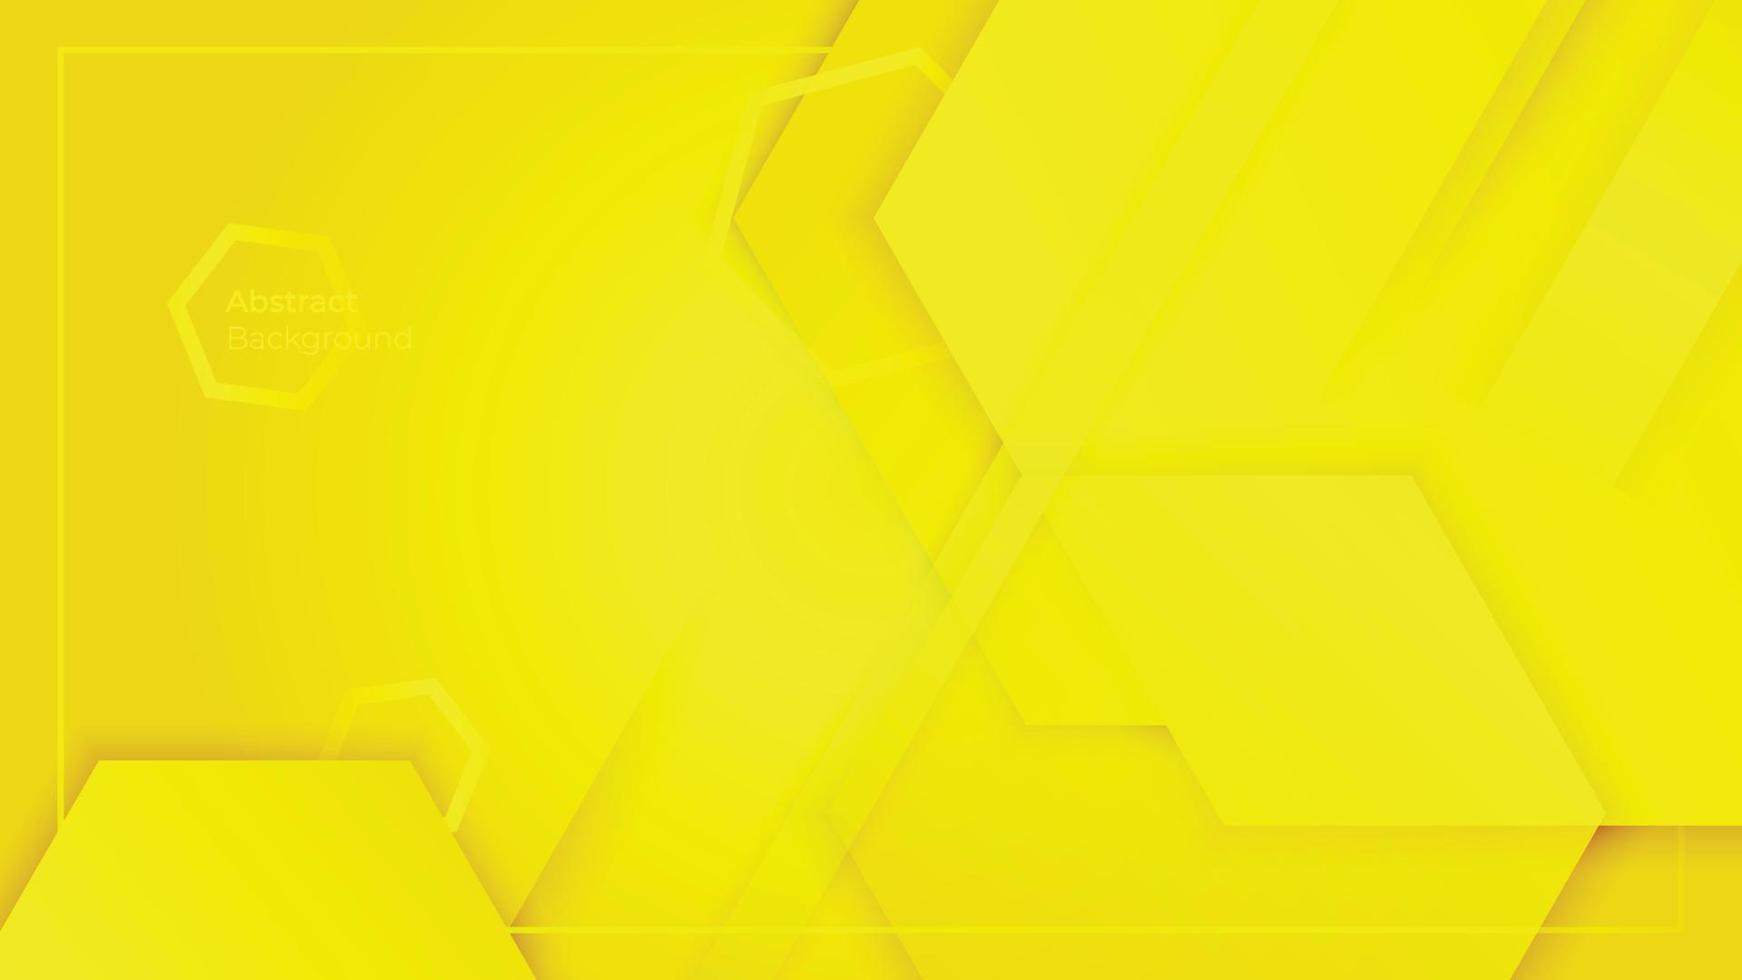 composición de fondo abstracto amarillo moderno del vector de diseño hexagonal